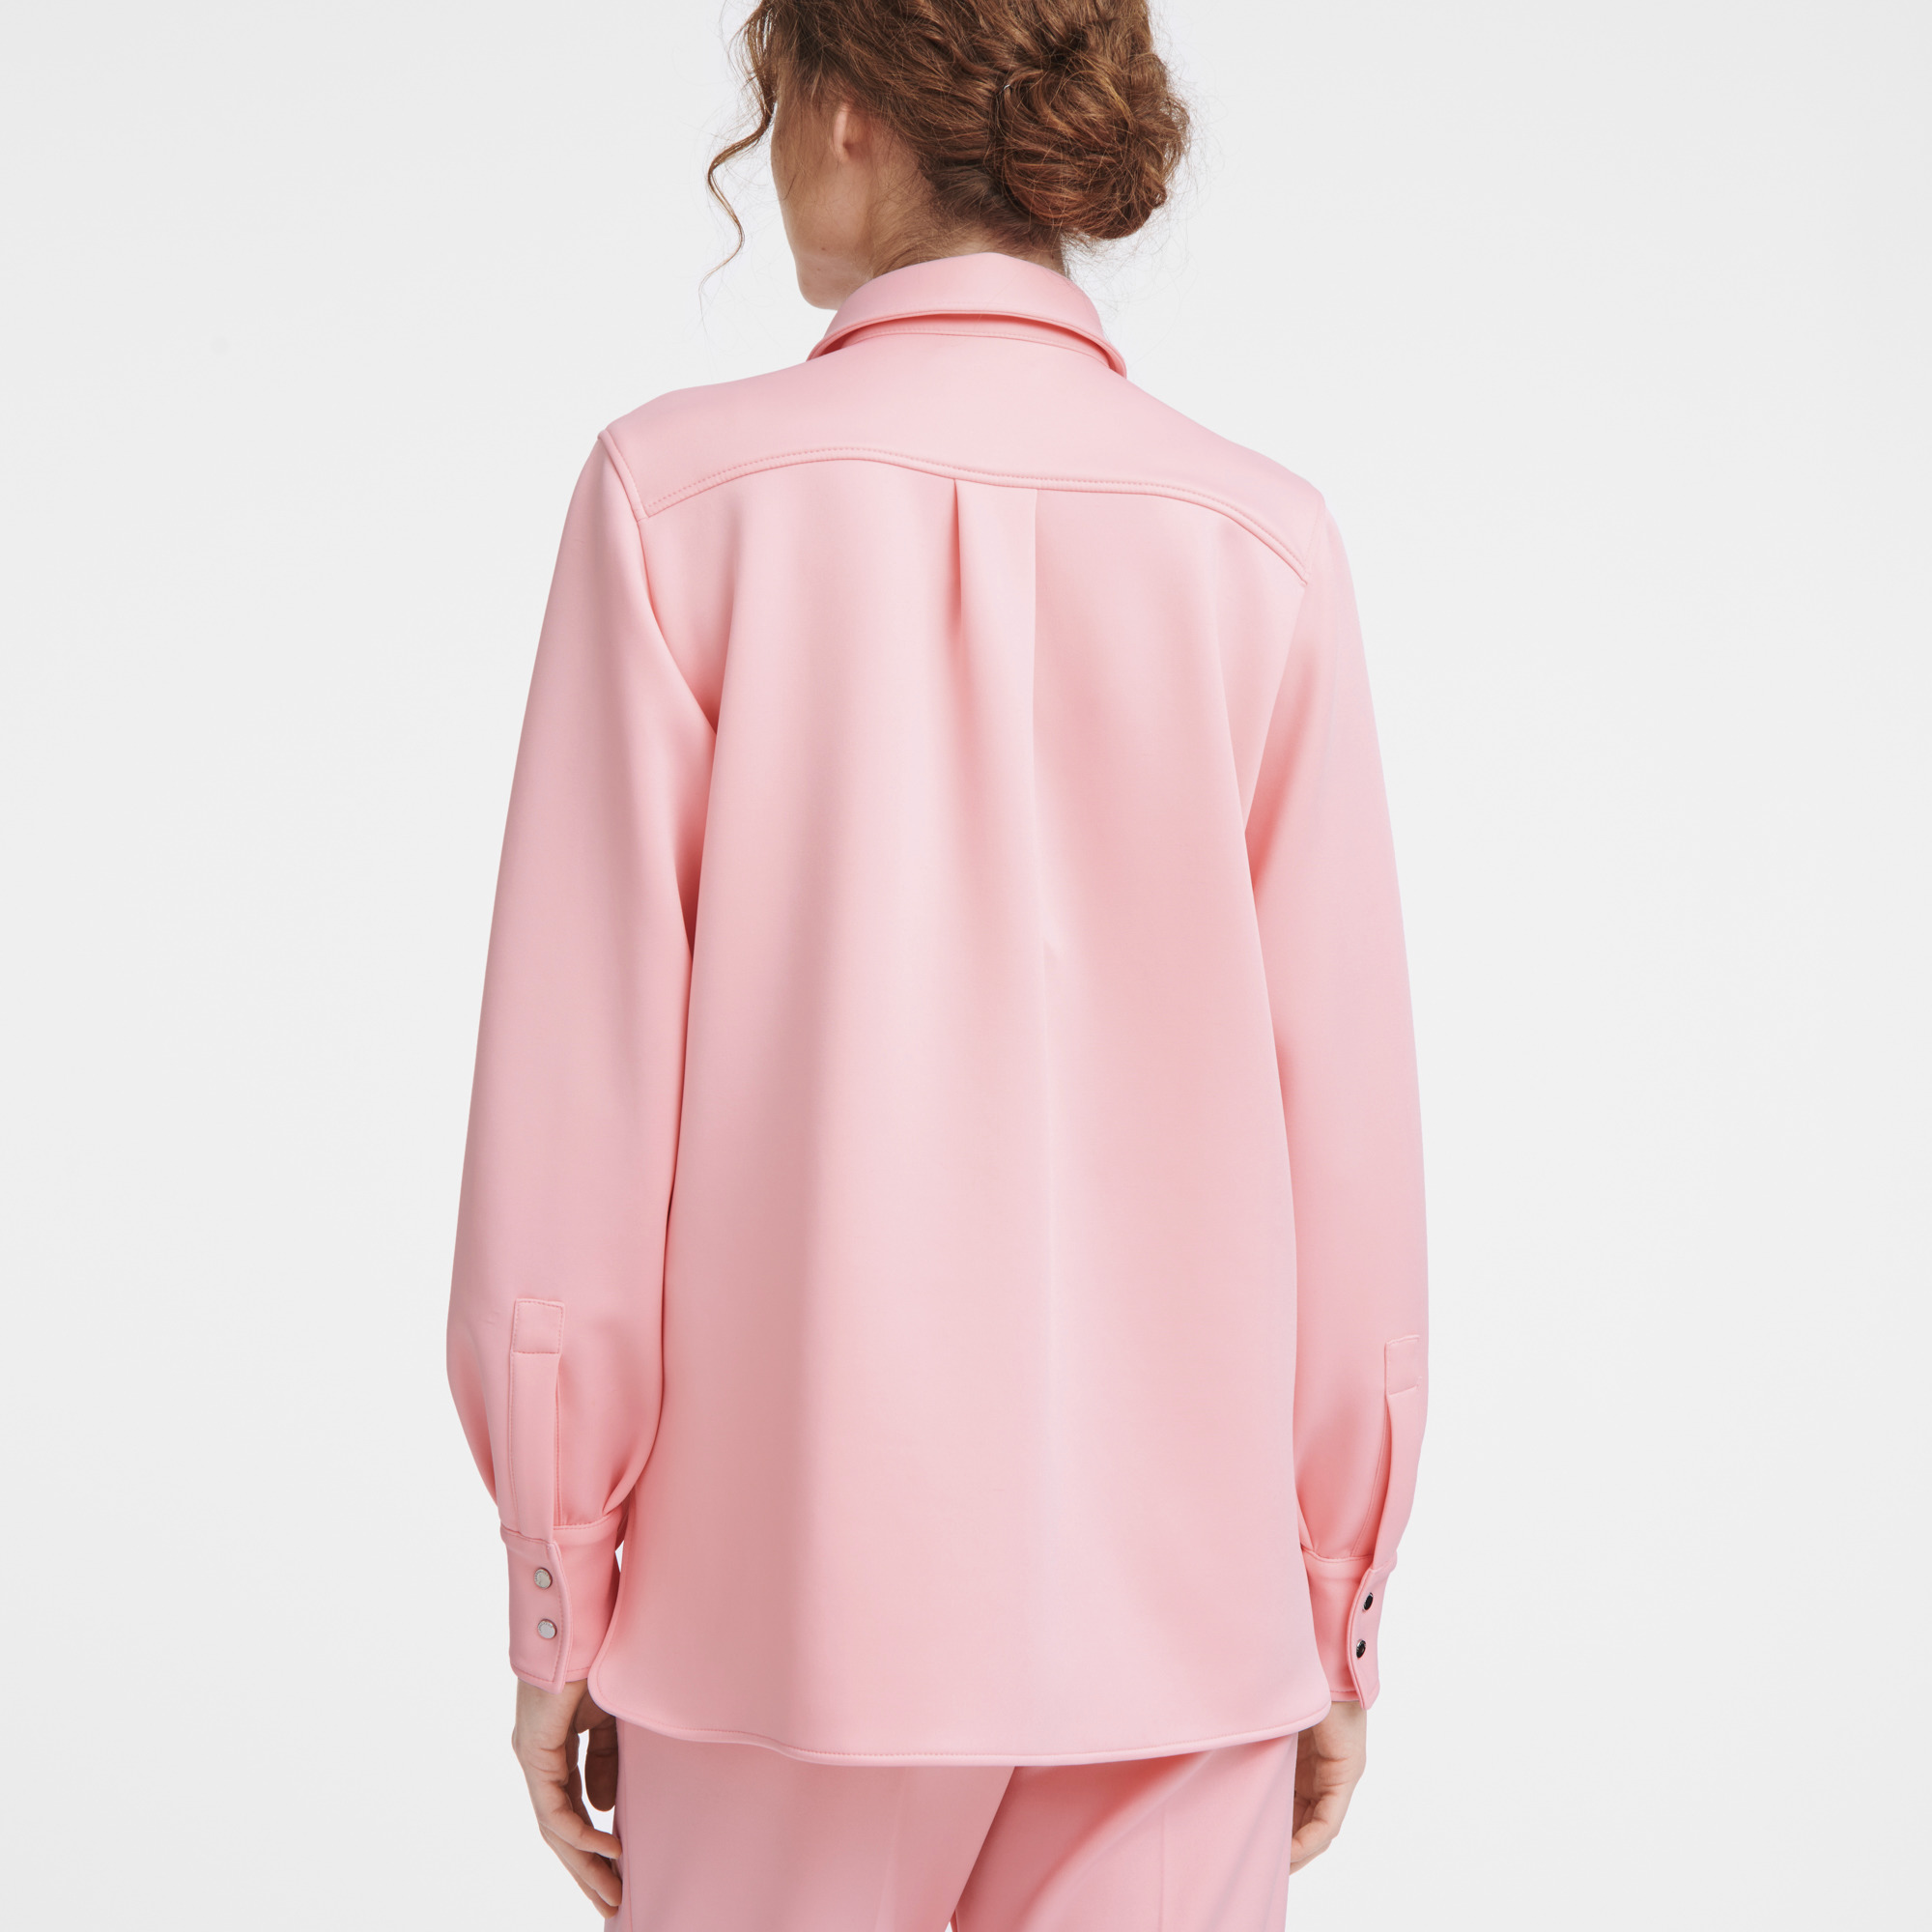 Shirt Pink - Jersey - 4